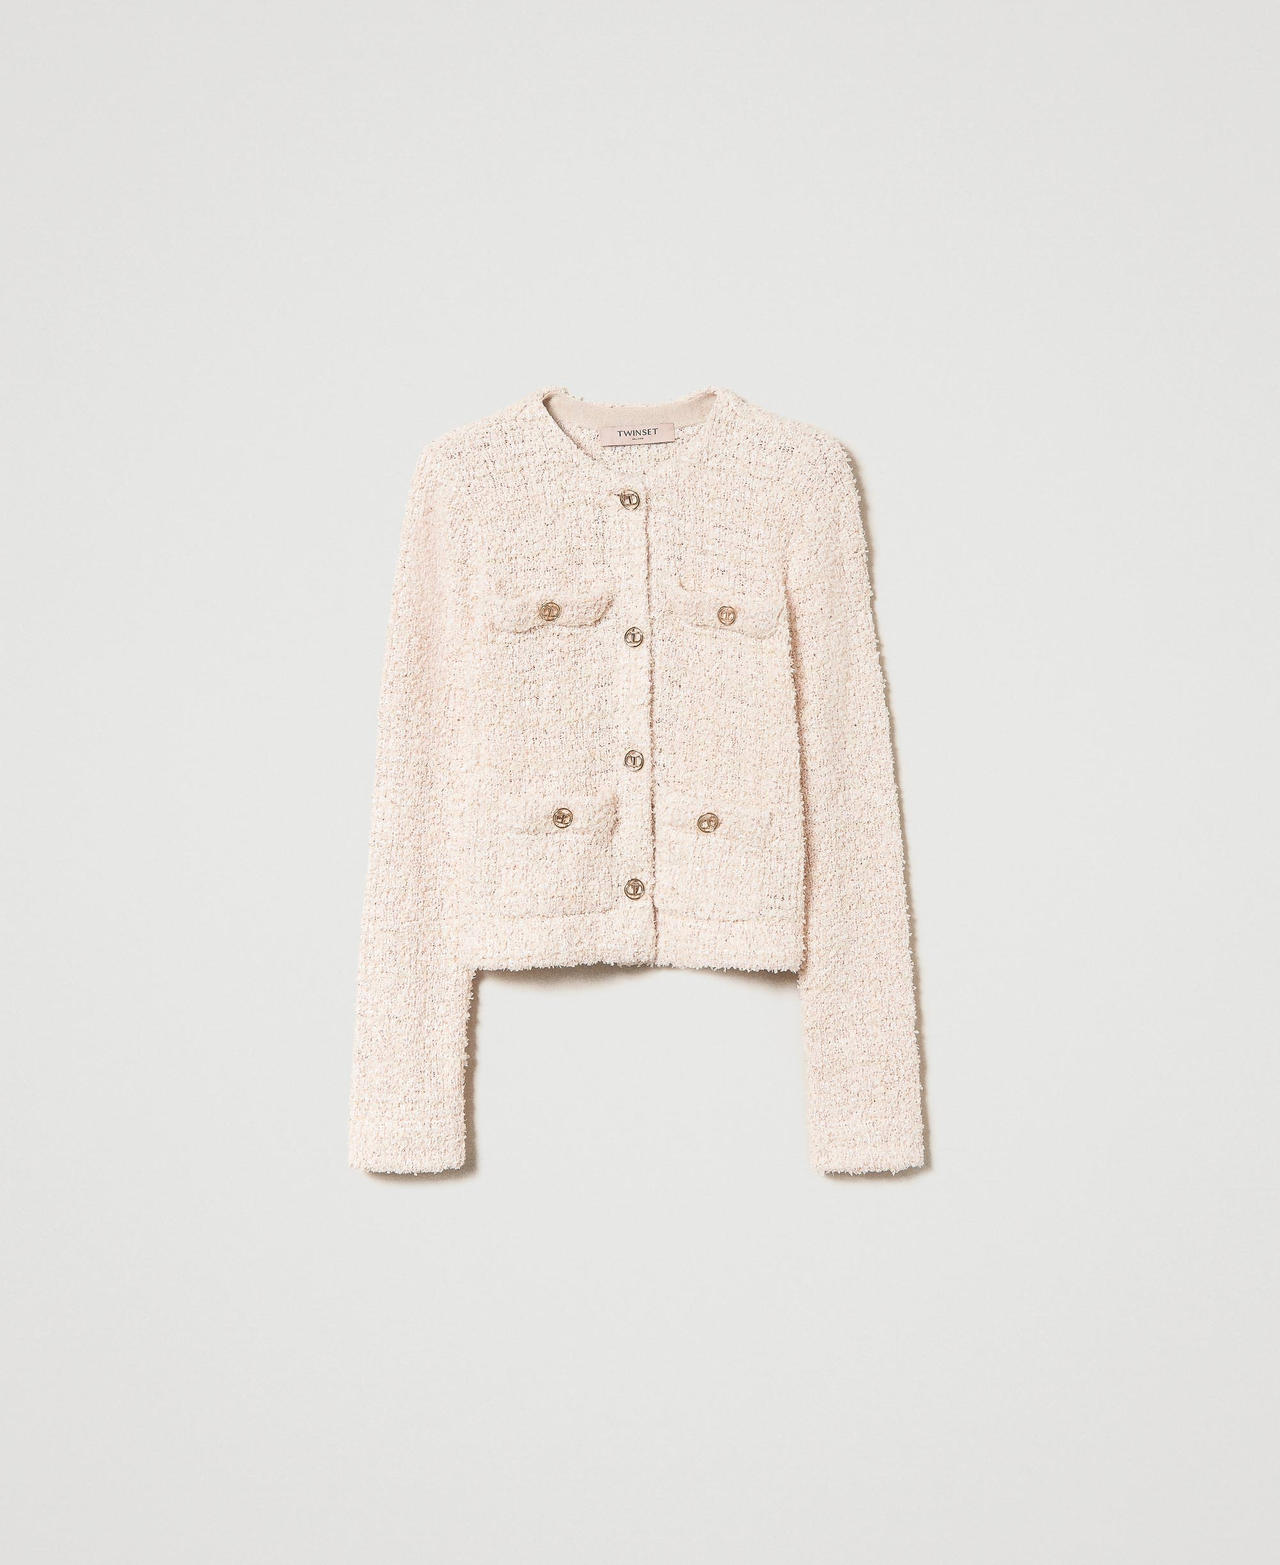 twinset giacche e capispalla - giacca in maglia boucl con bottoni oval t, jacquard boucle cupcake pink, paillettes, taglia: s donna